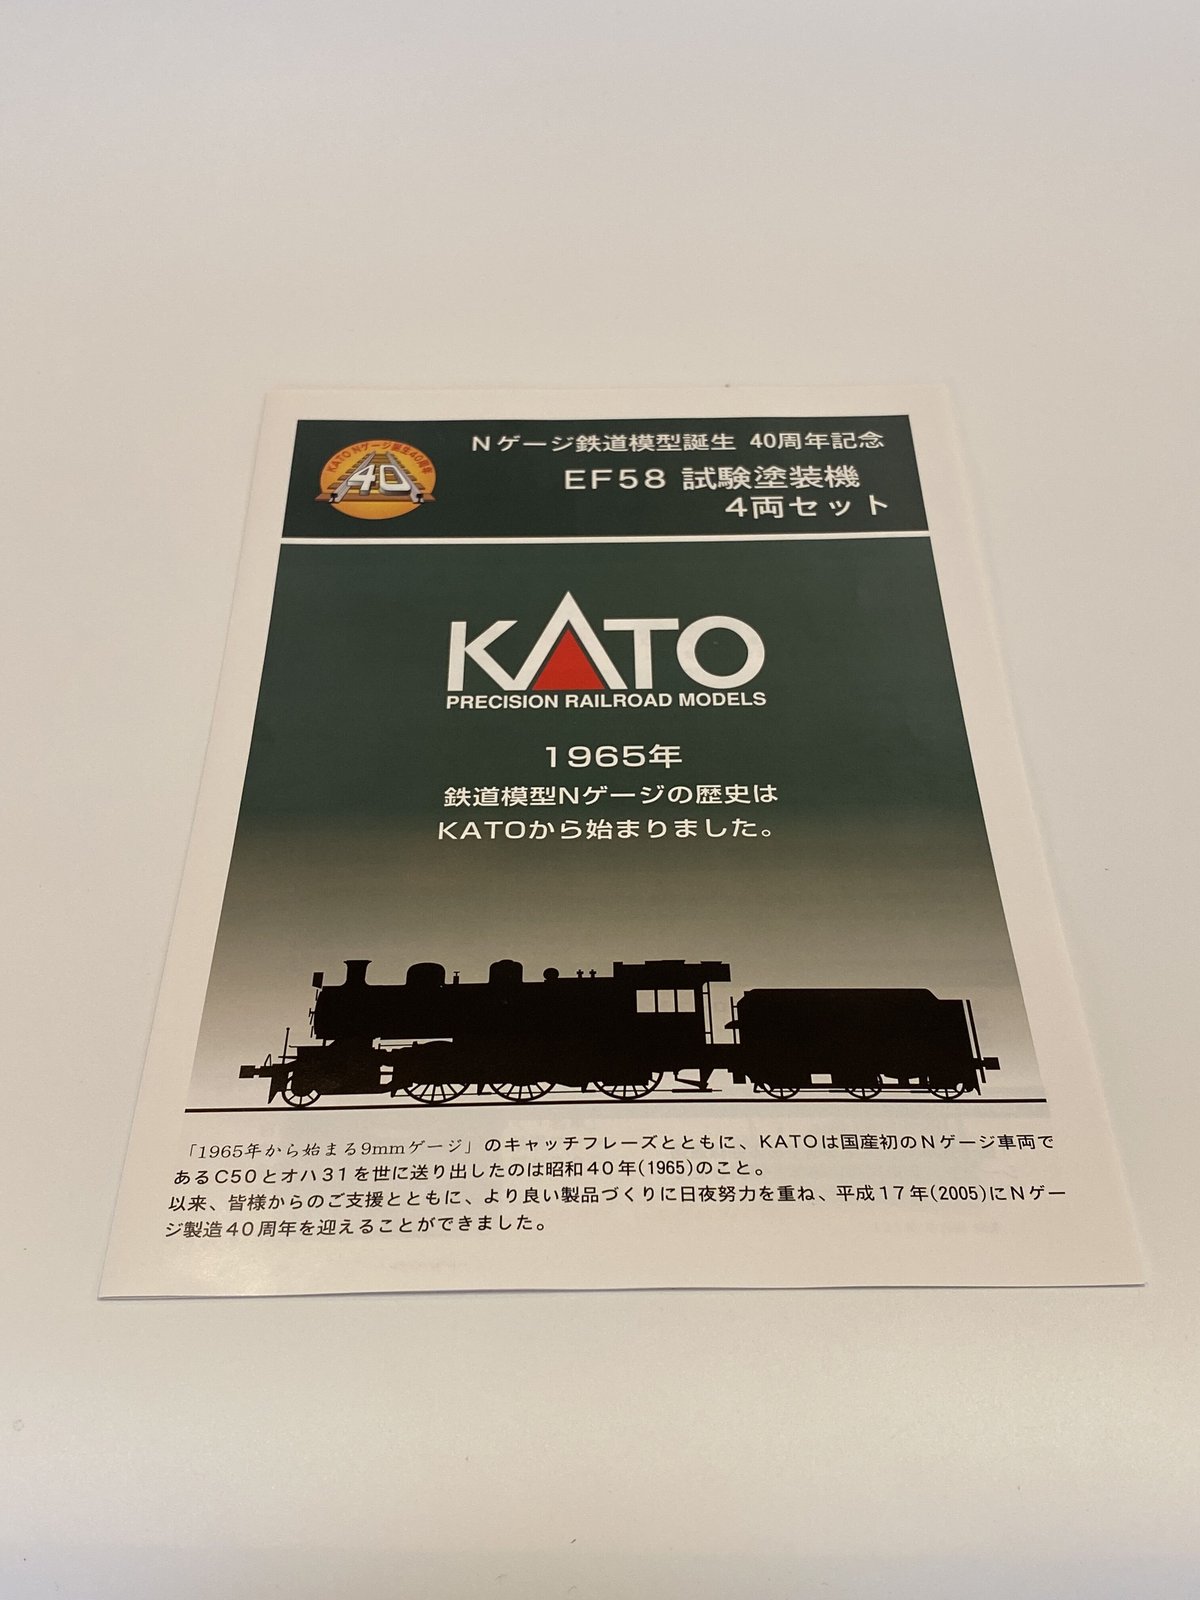 １０→９KATO Nケージ鉄道模型誕生 40周年記念 EF58-